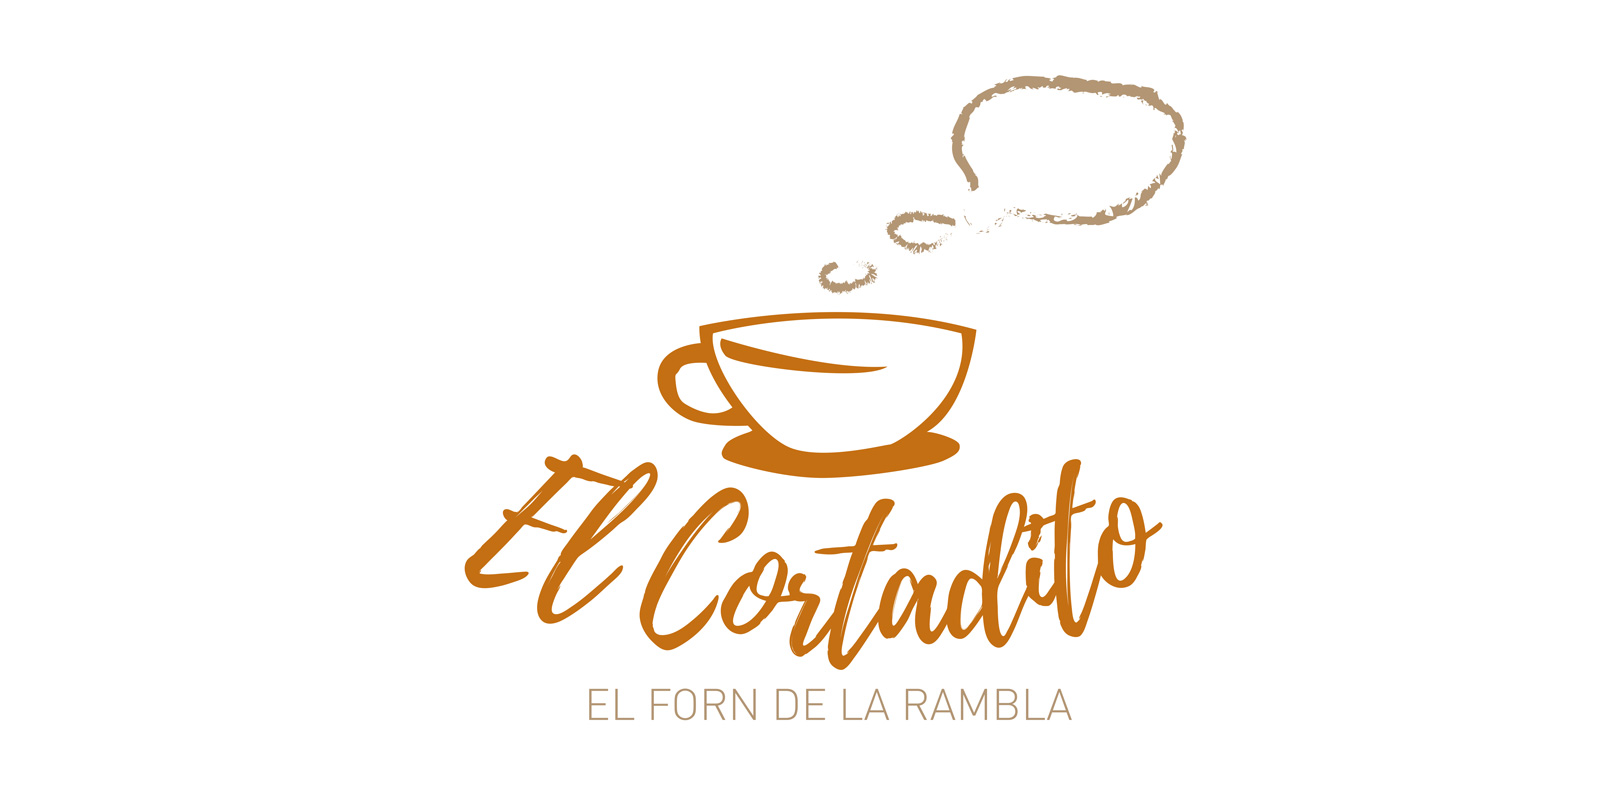 Graphic and creative restaurant menu design - El Cortadito